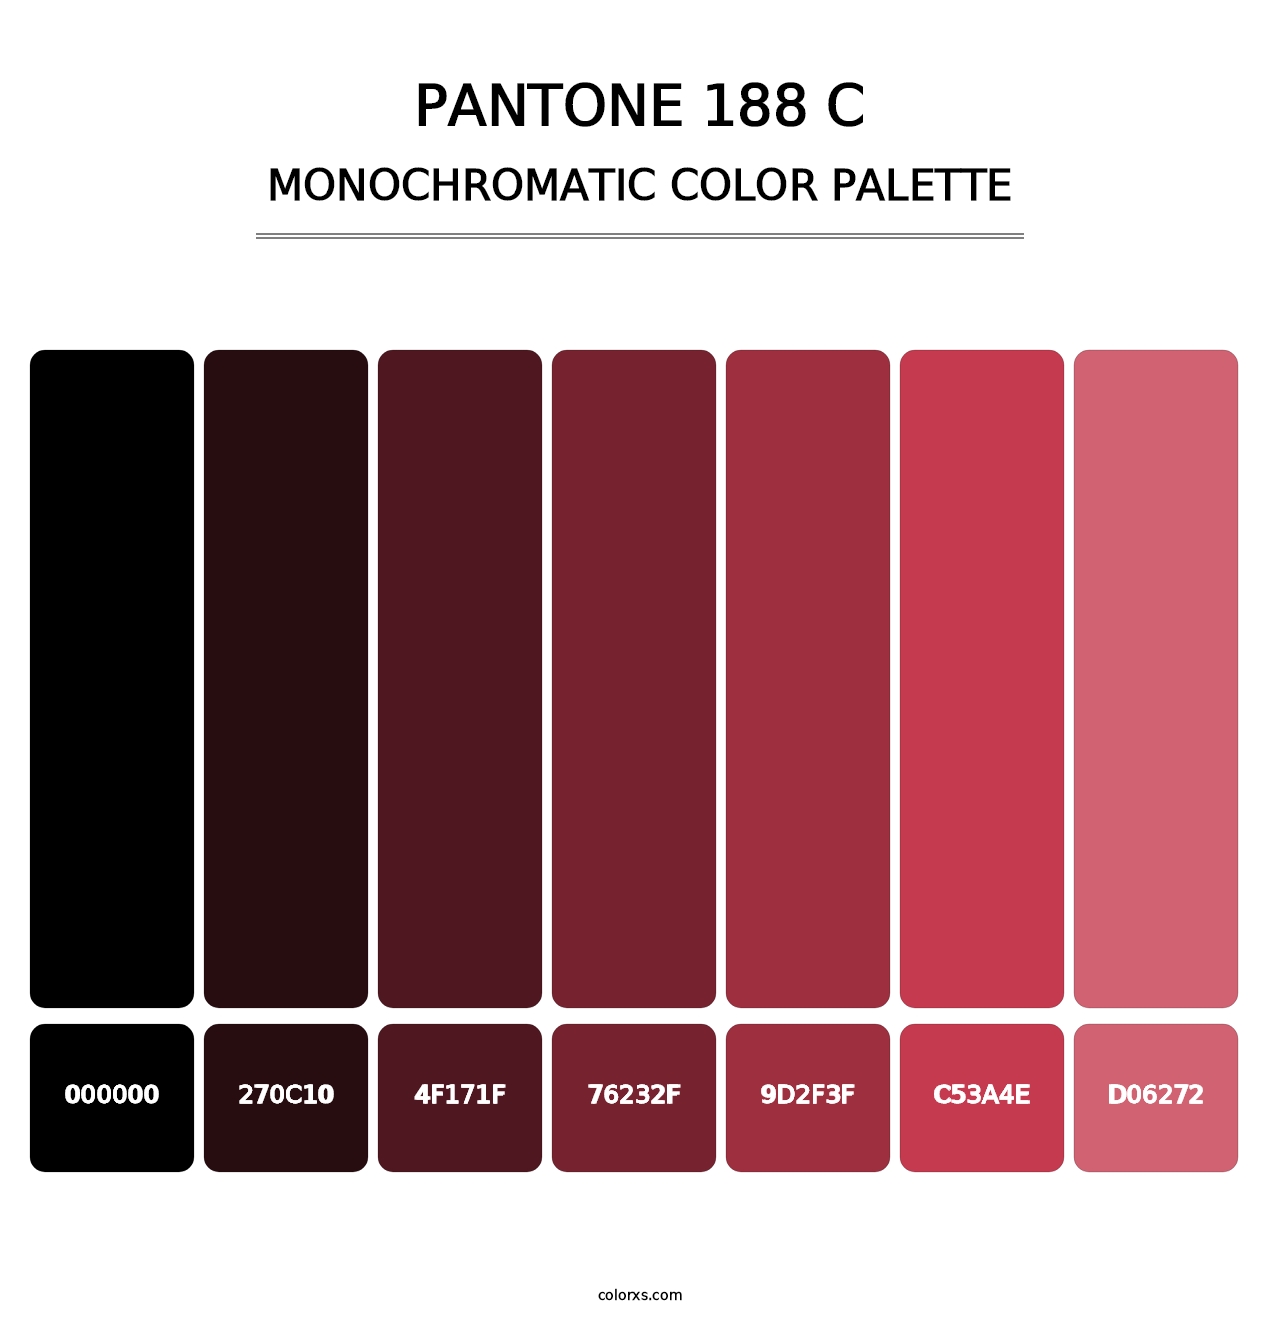 PANTONE 188 C - Monochromatic Color Palette